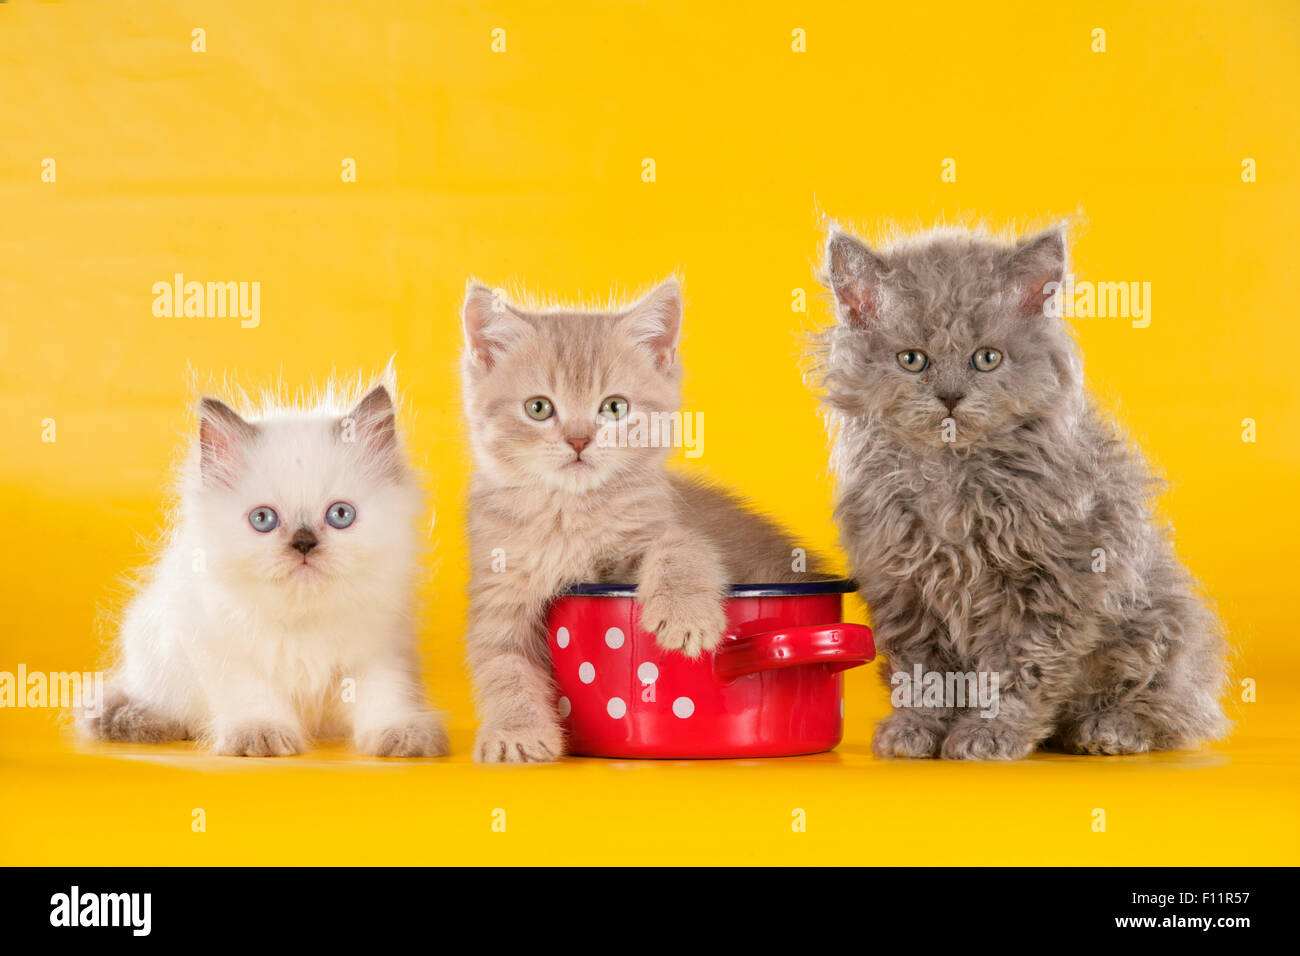 Il gatto domestico tre gattini (Selkirk Rex e British Shorthair) seduto accanto al rosso pentola di cottura white polka dots Studio immagine Foto Stock